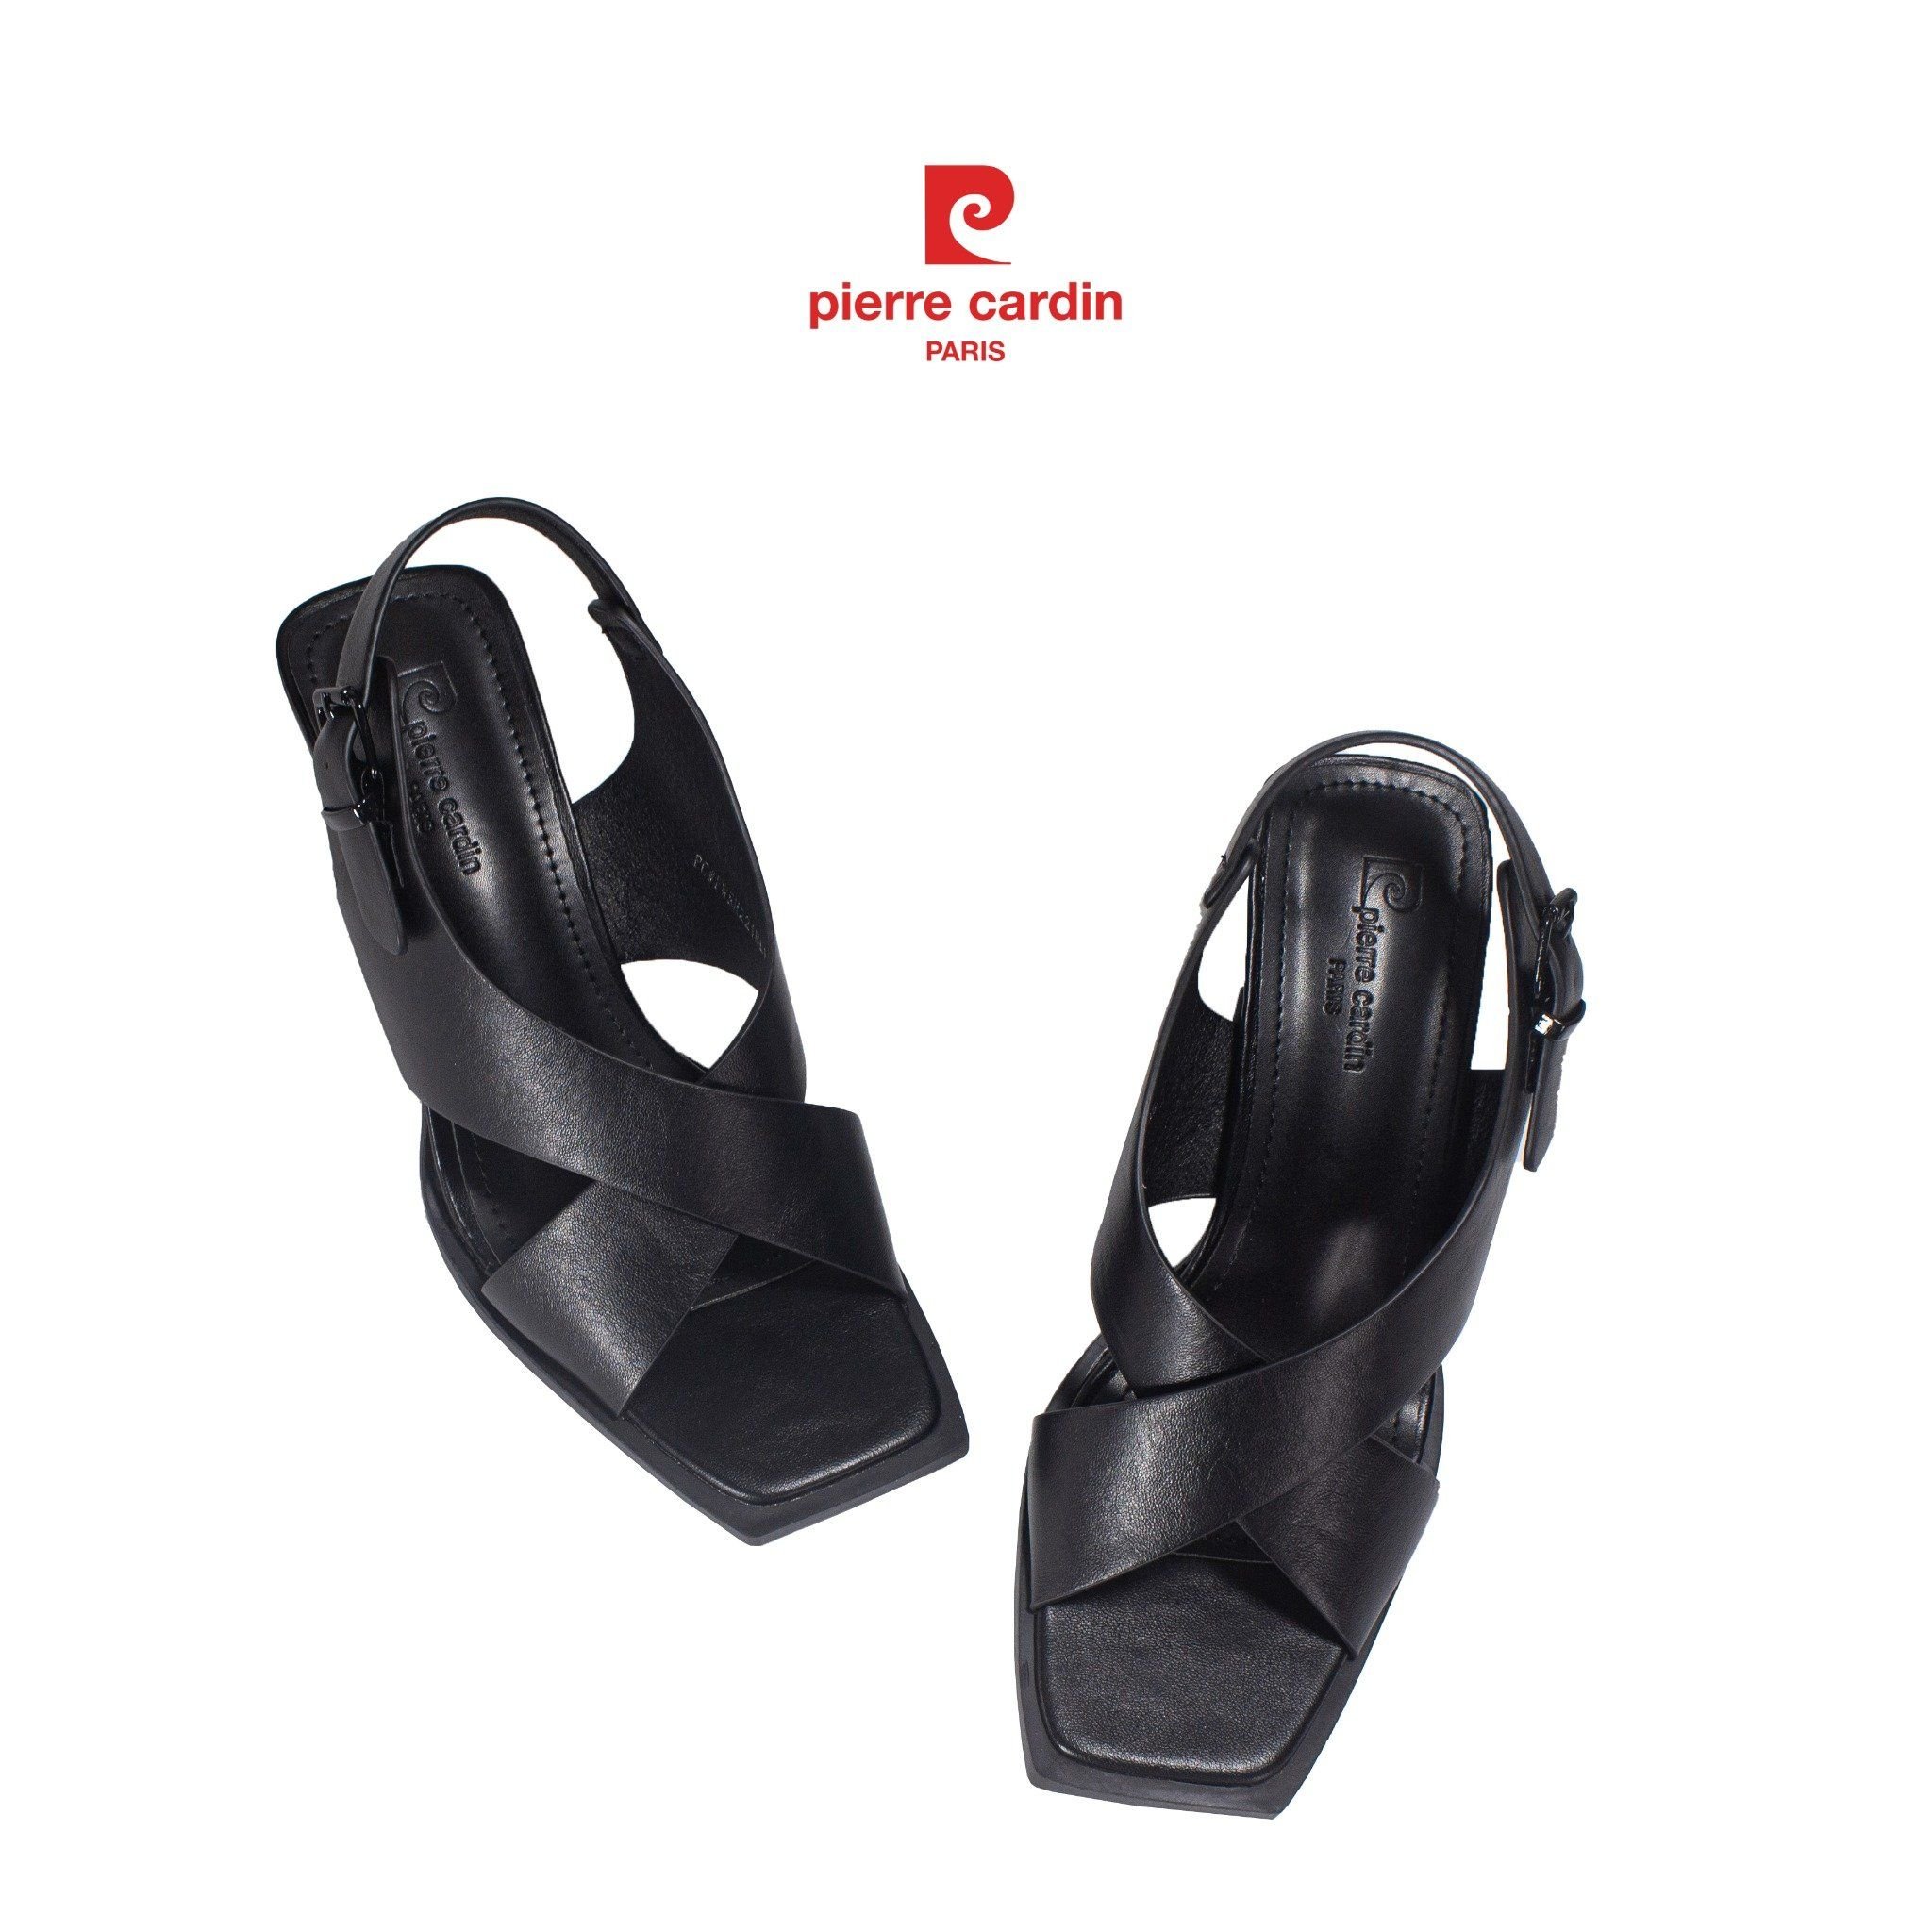 Pierre Cardin Paris Vietnam: Giày Sandals Cao Gót Nữ Pierre Cardin -  PCWFWSG 221 (BLACK)